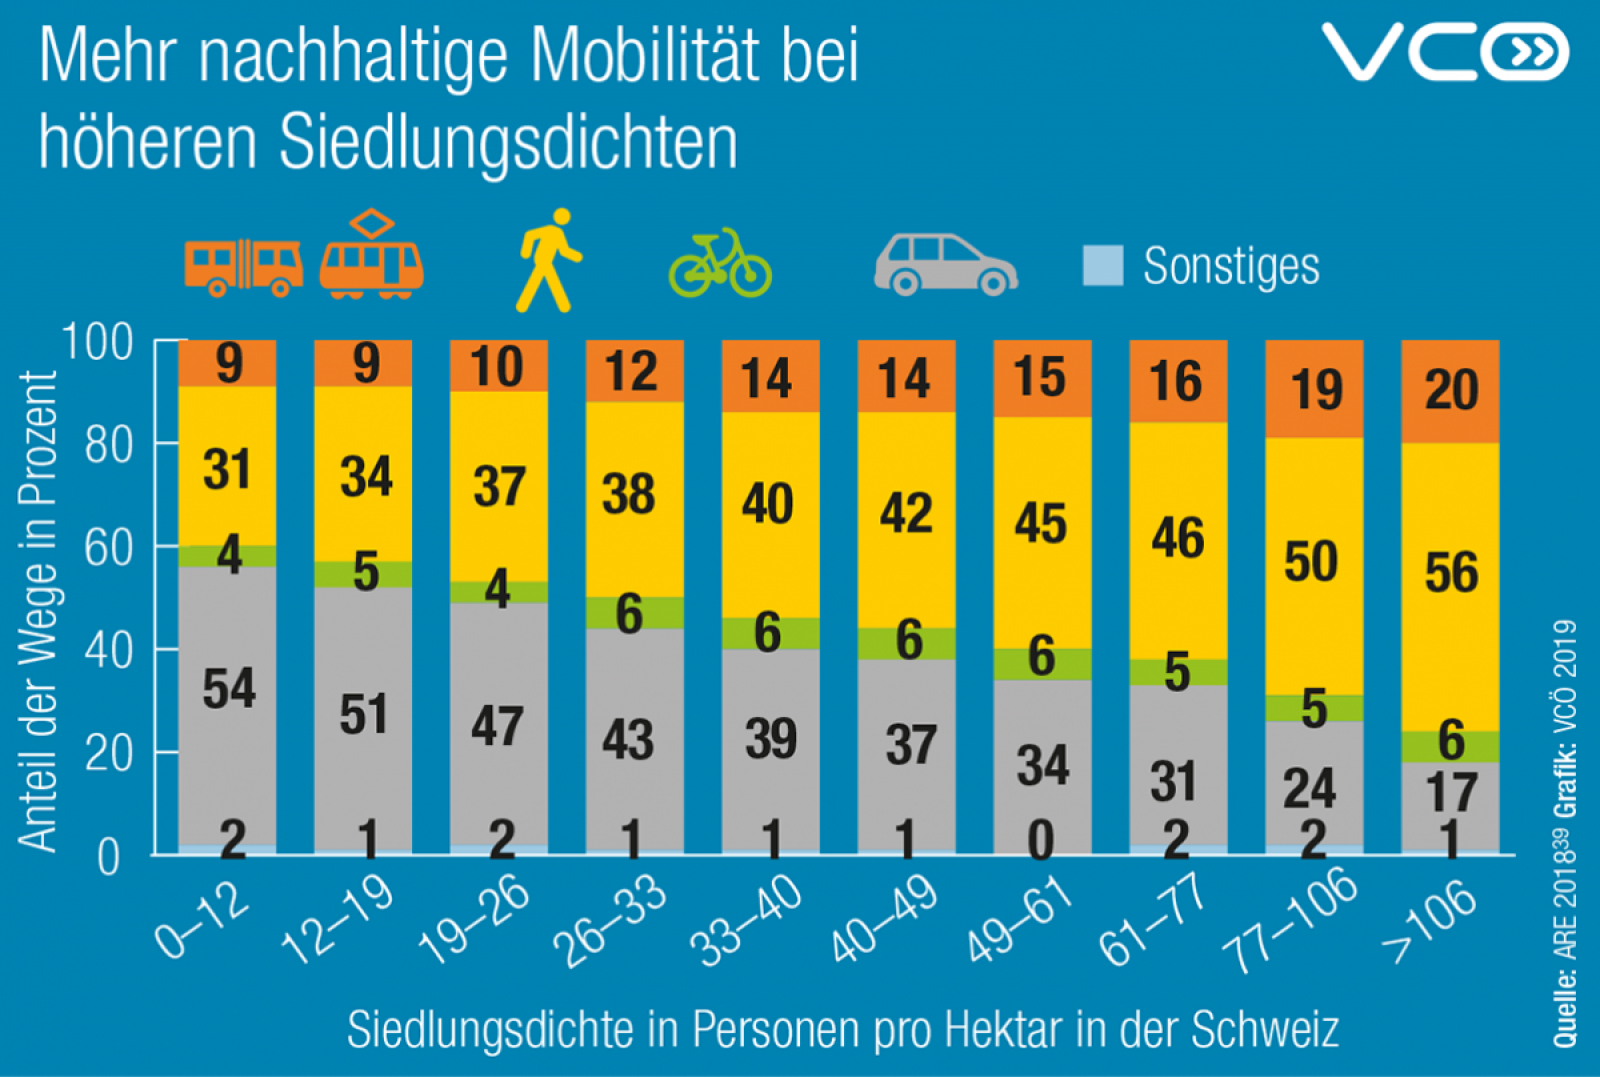 Grafik: Mehr nachhaltige Mobilität bei hoher Siedlungsdichte in der Schweiz. Bei einer Siedlungsdichte von 0 - 12 Personen pro Hektar beträgt der Auto-Anteil 54 %, bei mehr als 106 Personen pro Hektar nur mehr 17%.